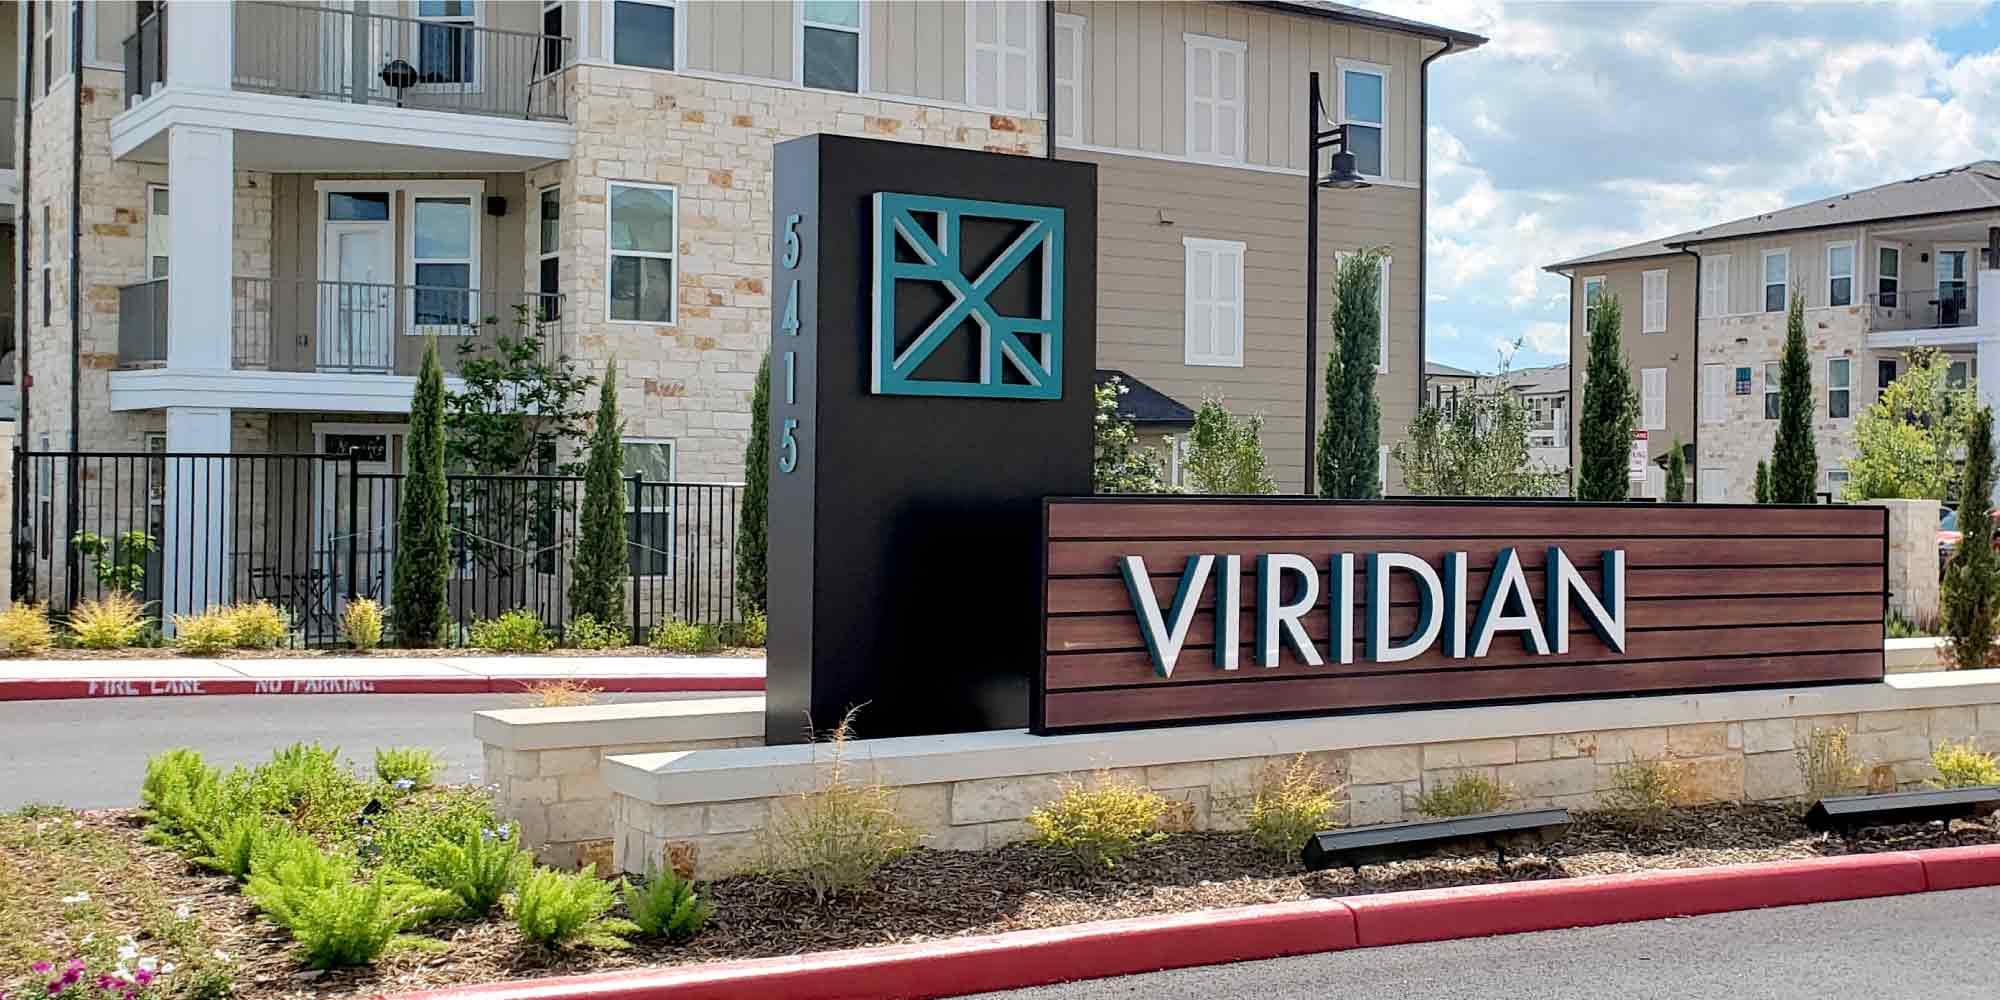 Viridian landscaped sign